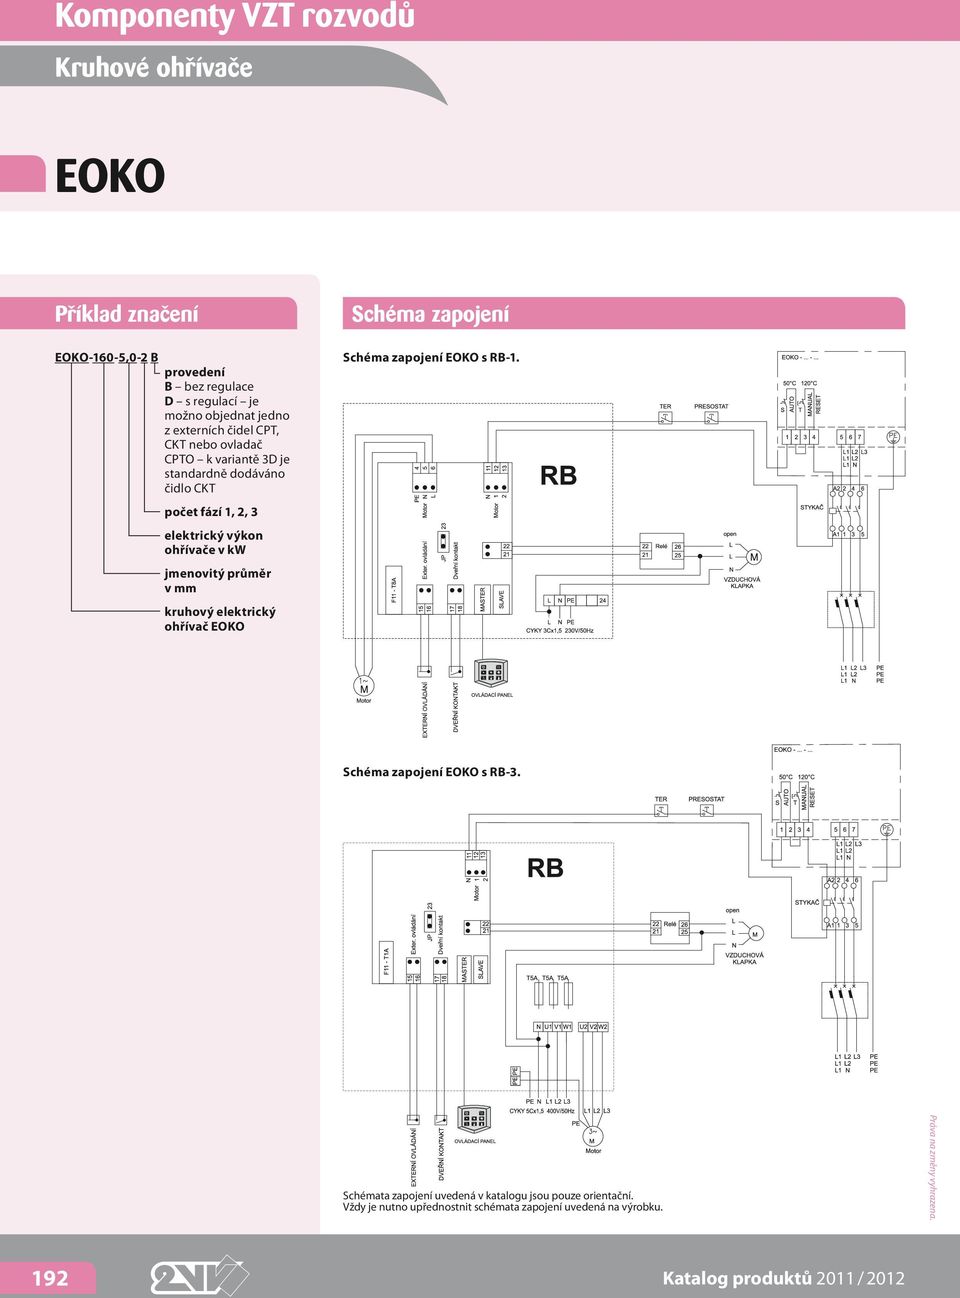 průměr v mm kruhový elektrický ohřívač EOKO Schéma zapojení Schéma zapojení EOKO s RB-1. Schéma zapojení EOKO s RB-3.